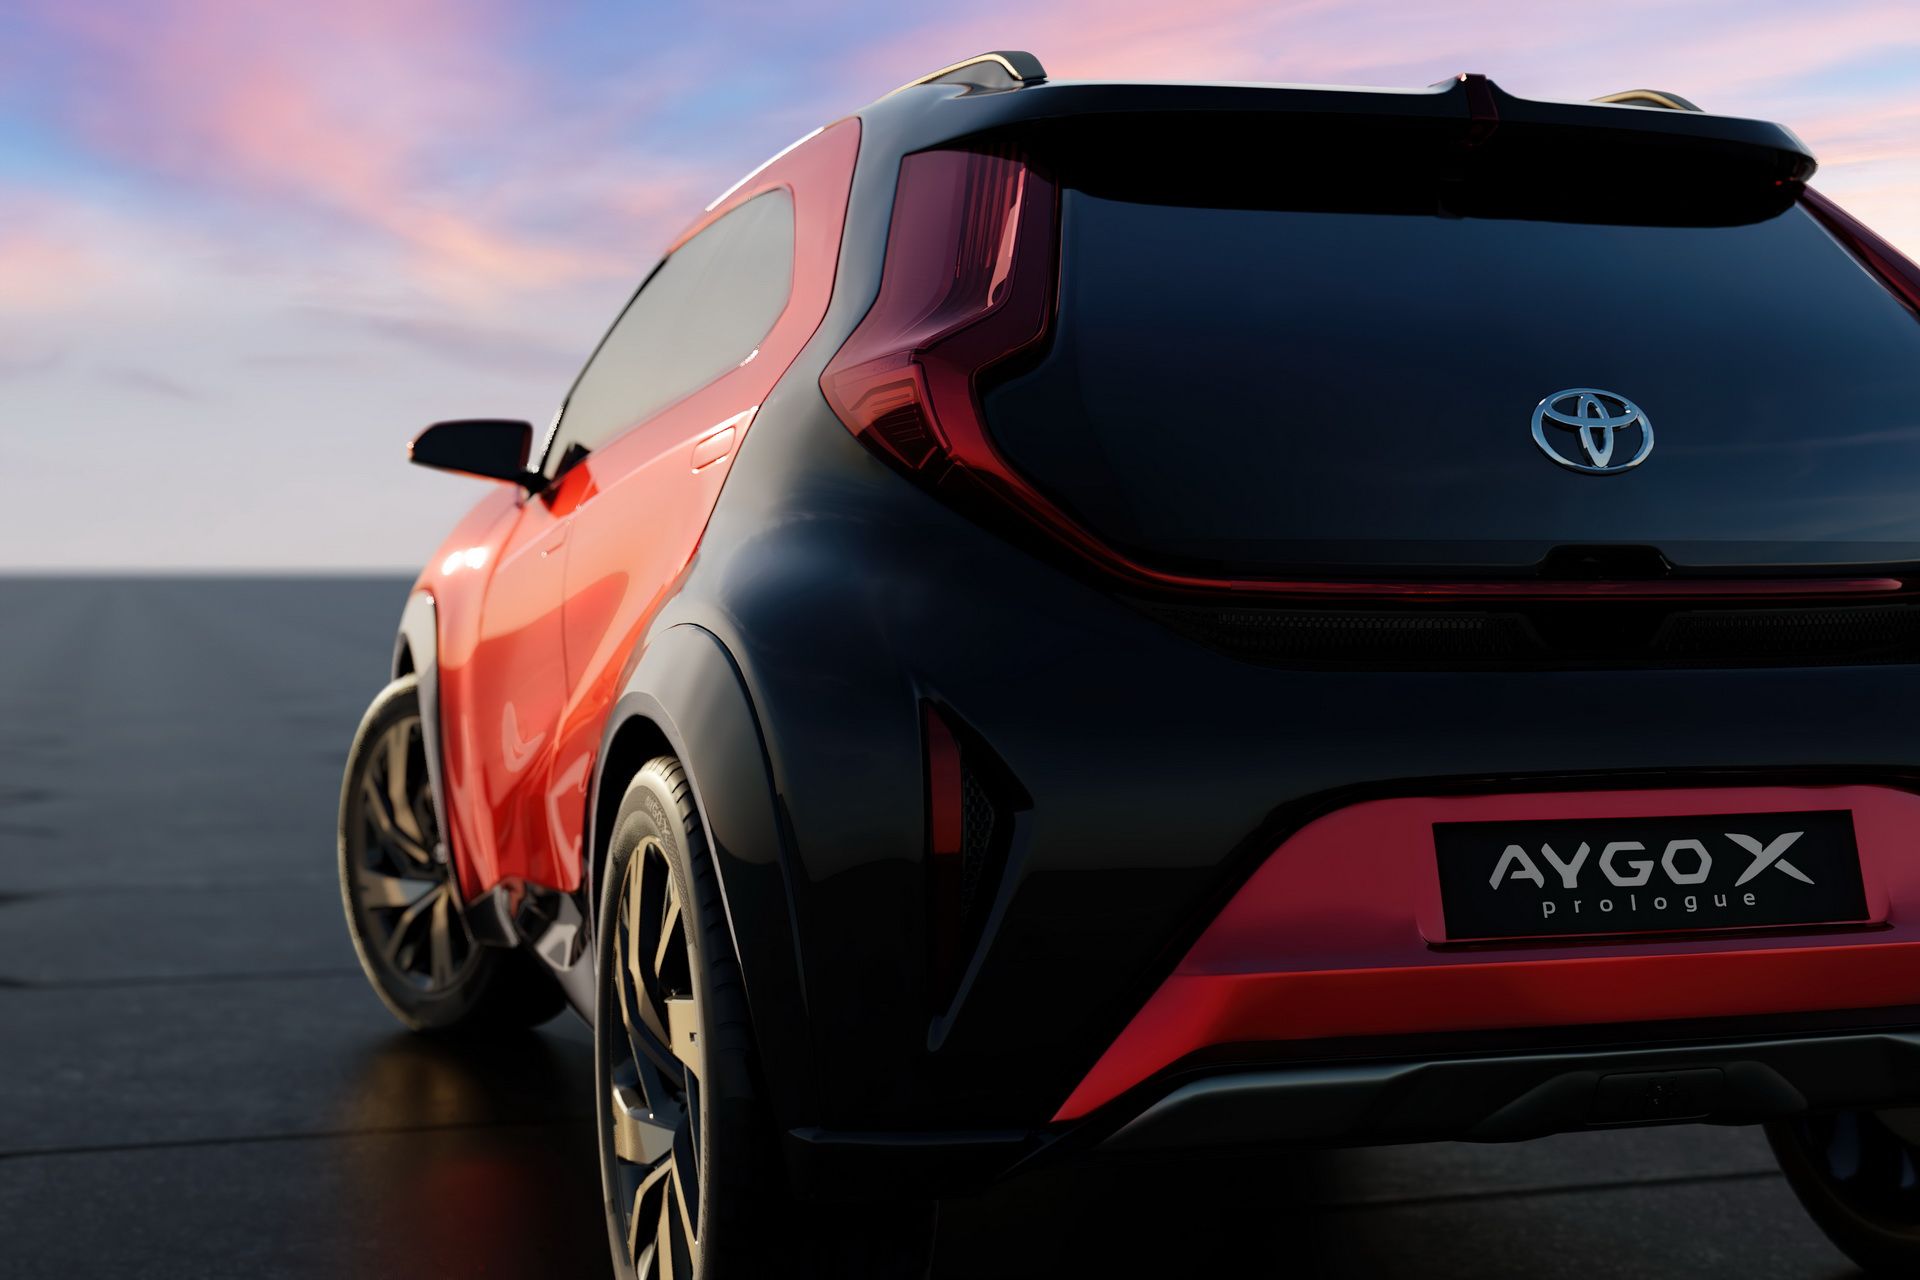 Toyota aygo x previewed – представлен концепт нового субкомпактного кроссовера